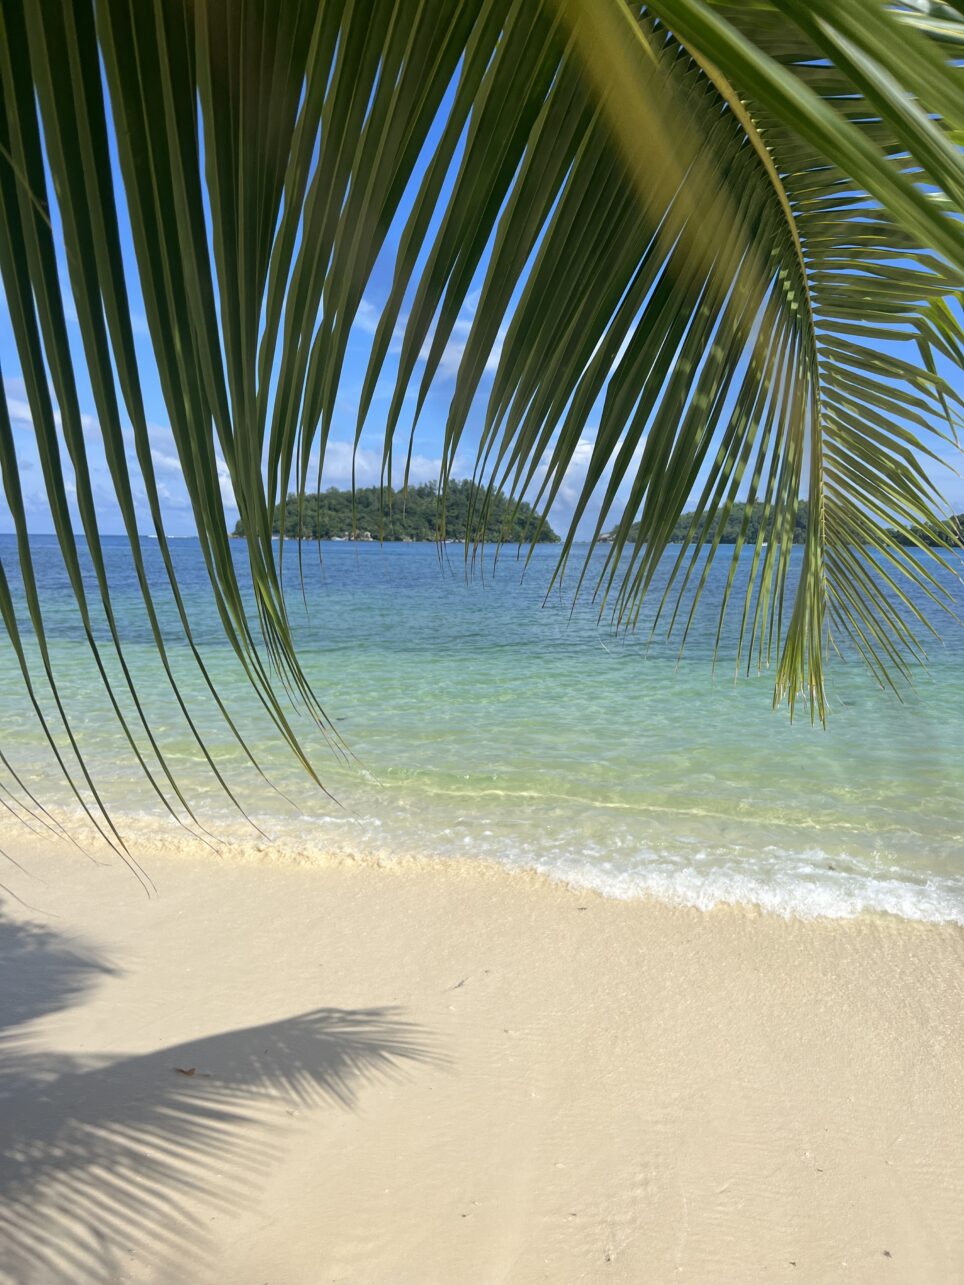 Palmen und eine Brise - Strandleben auf den Seychellen.